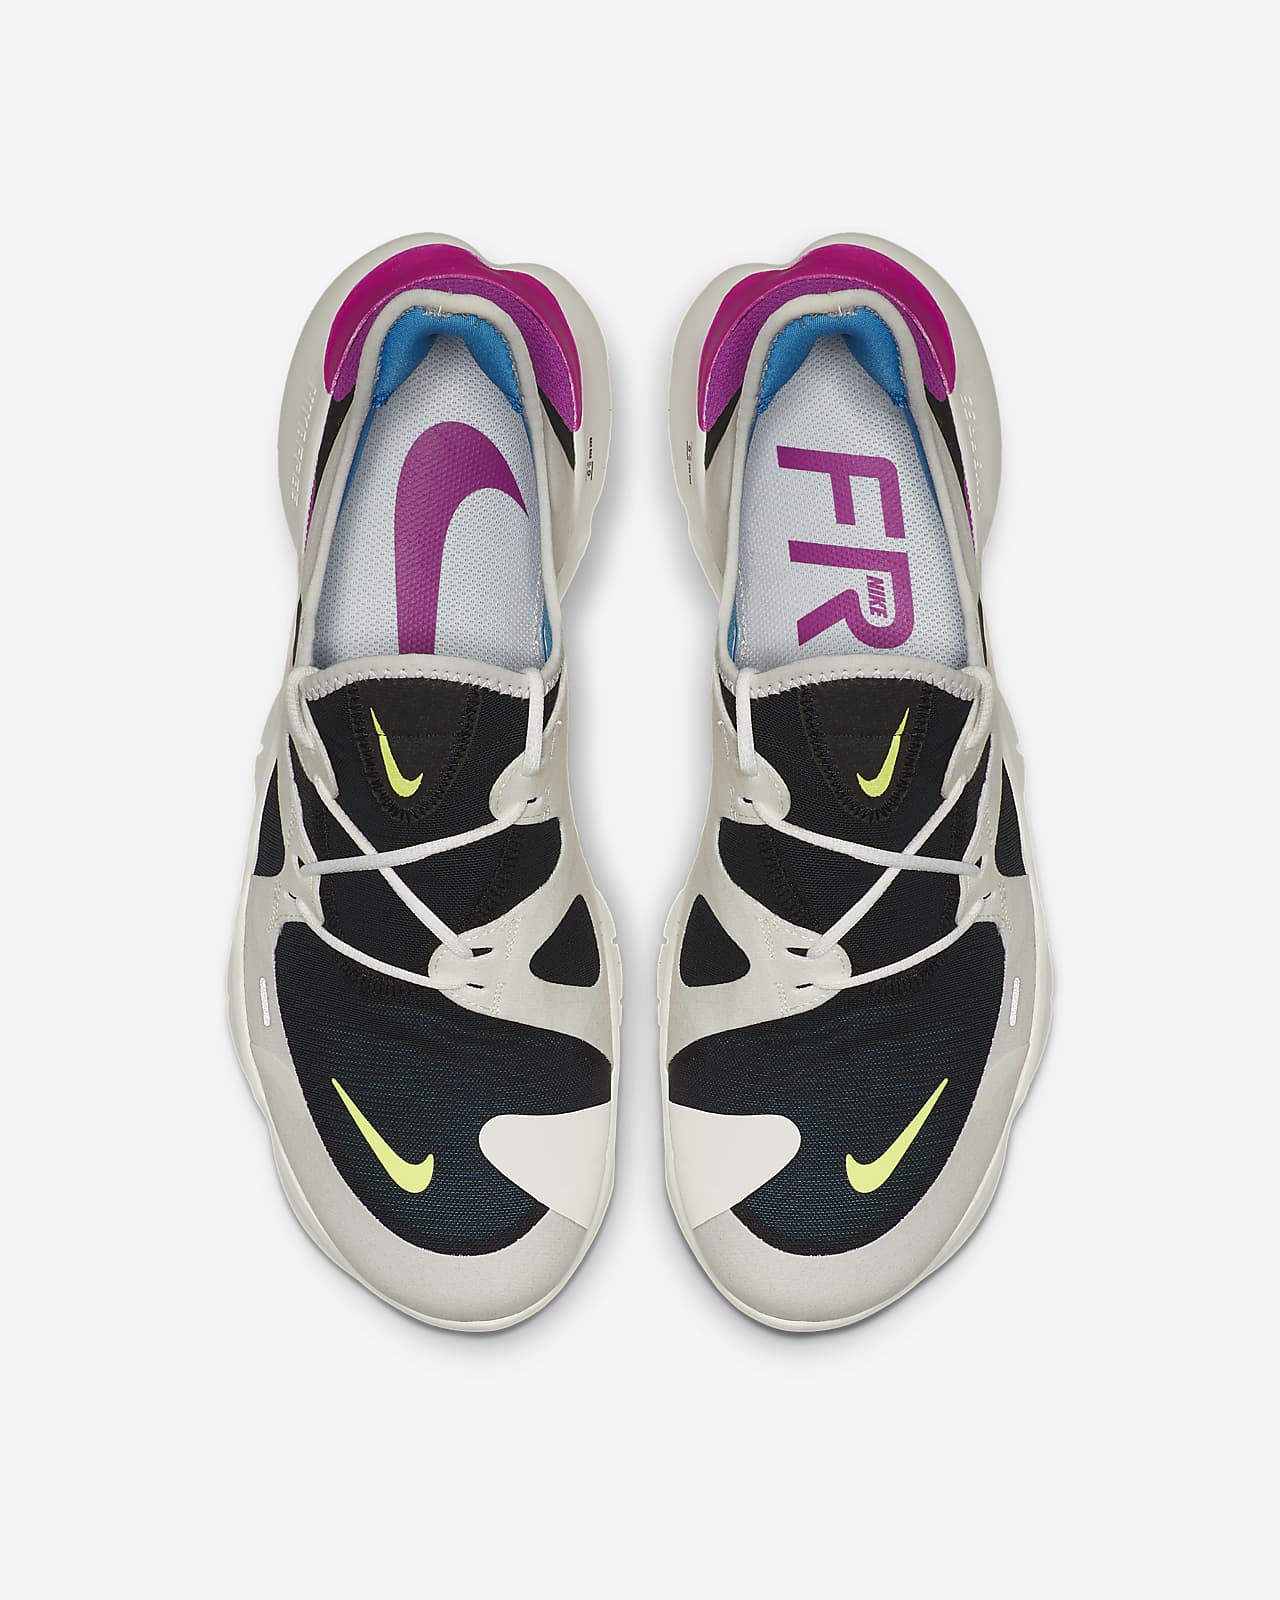 Nike Free RN 5.0 Men's Running Shoes